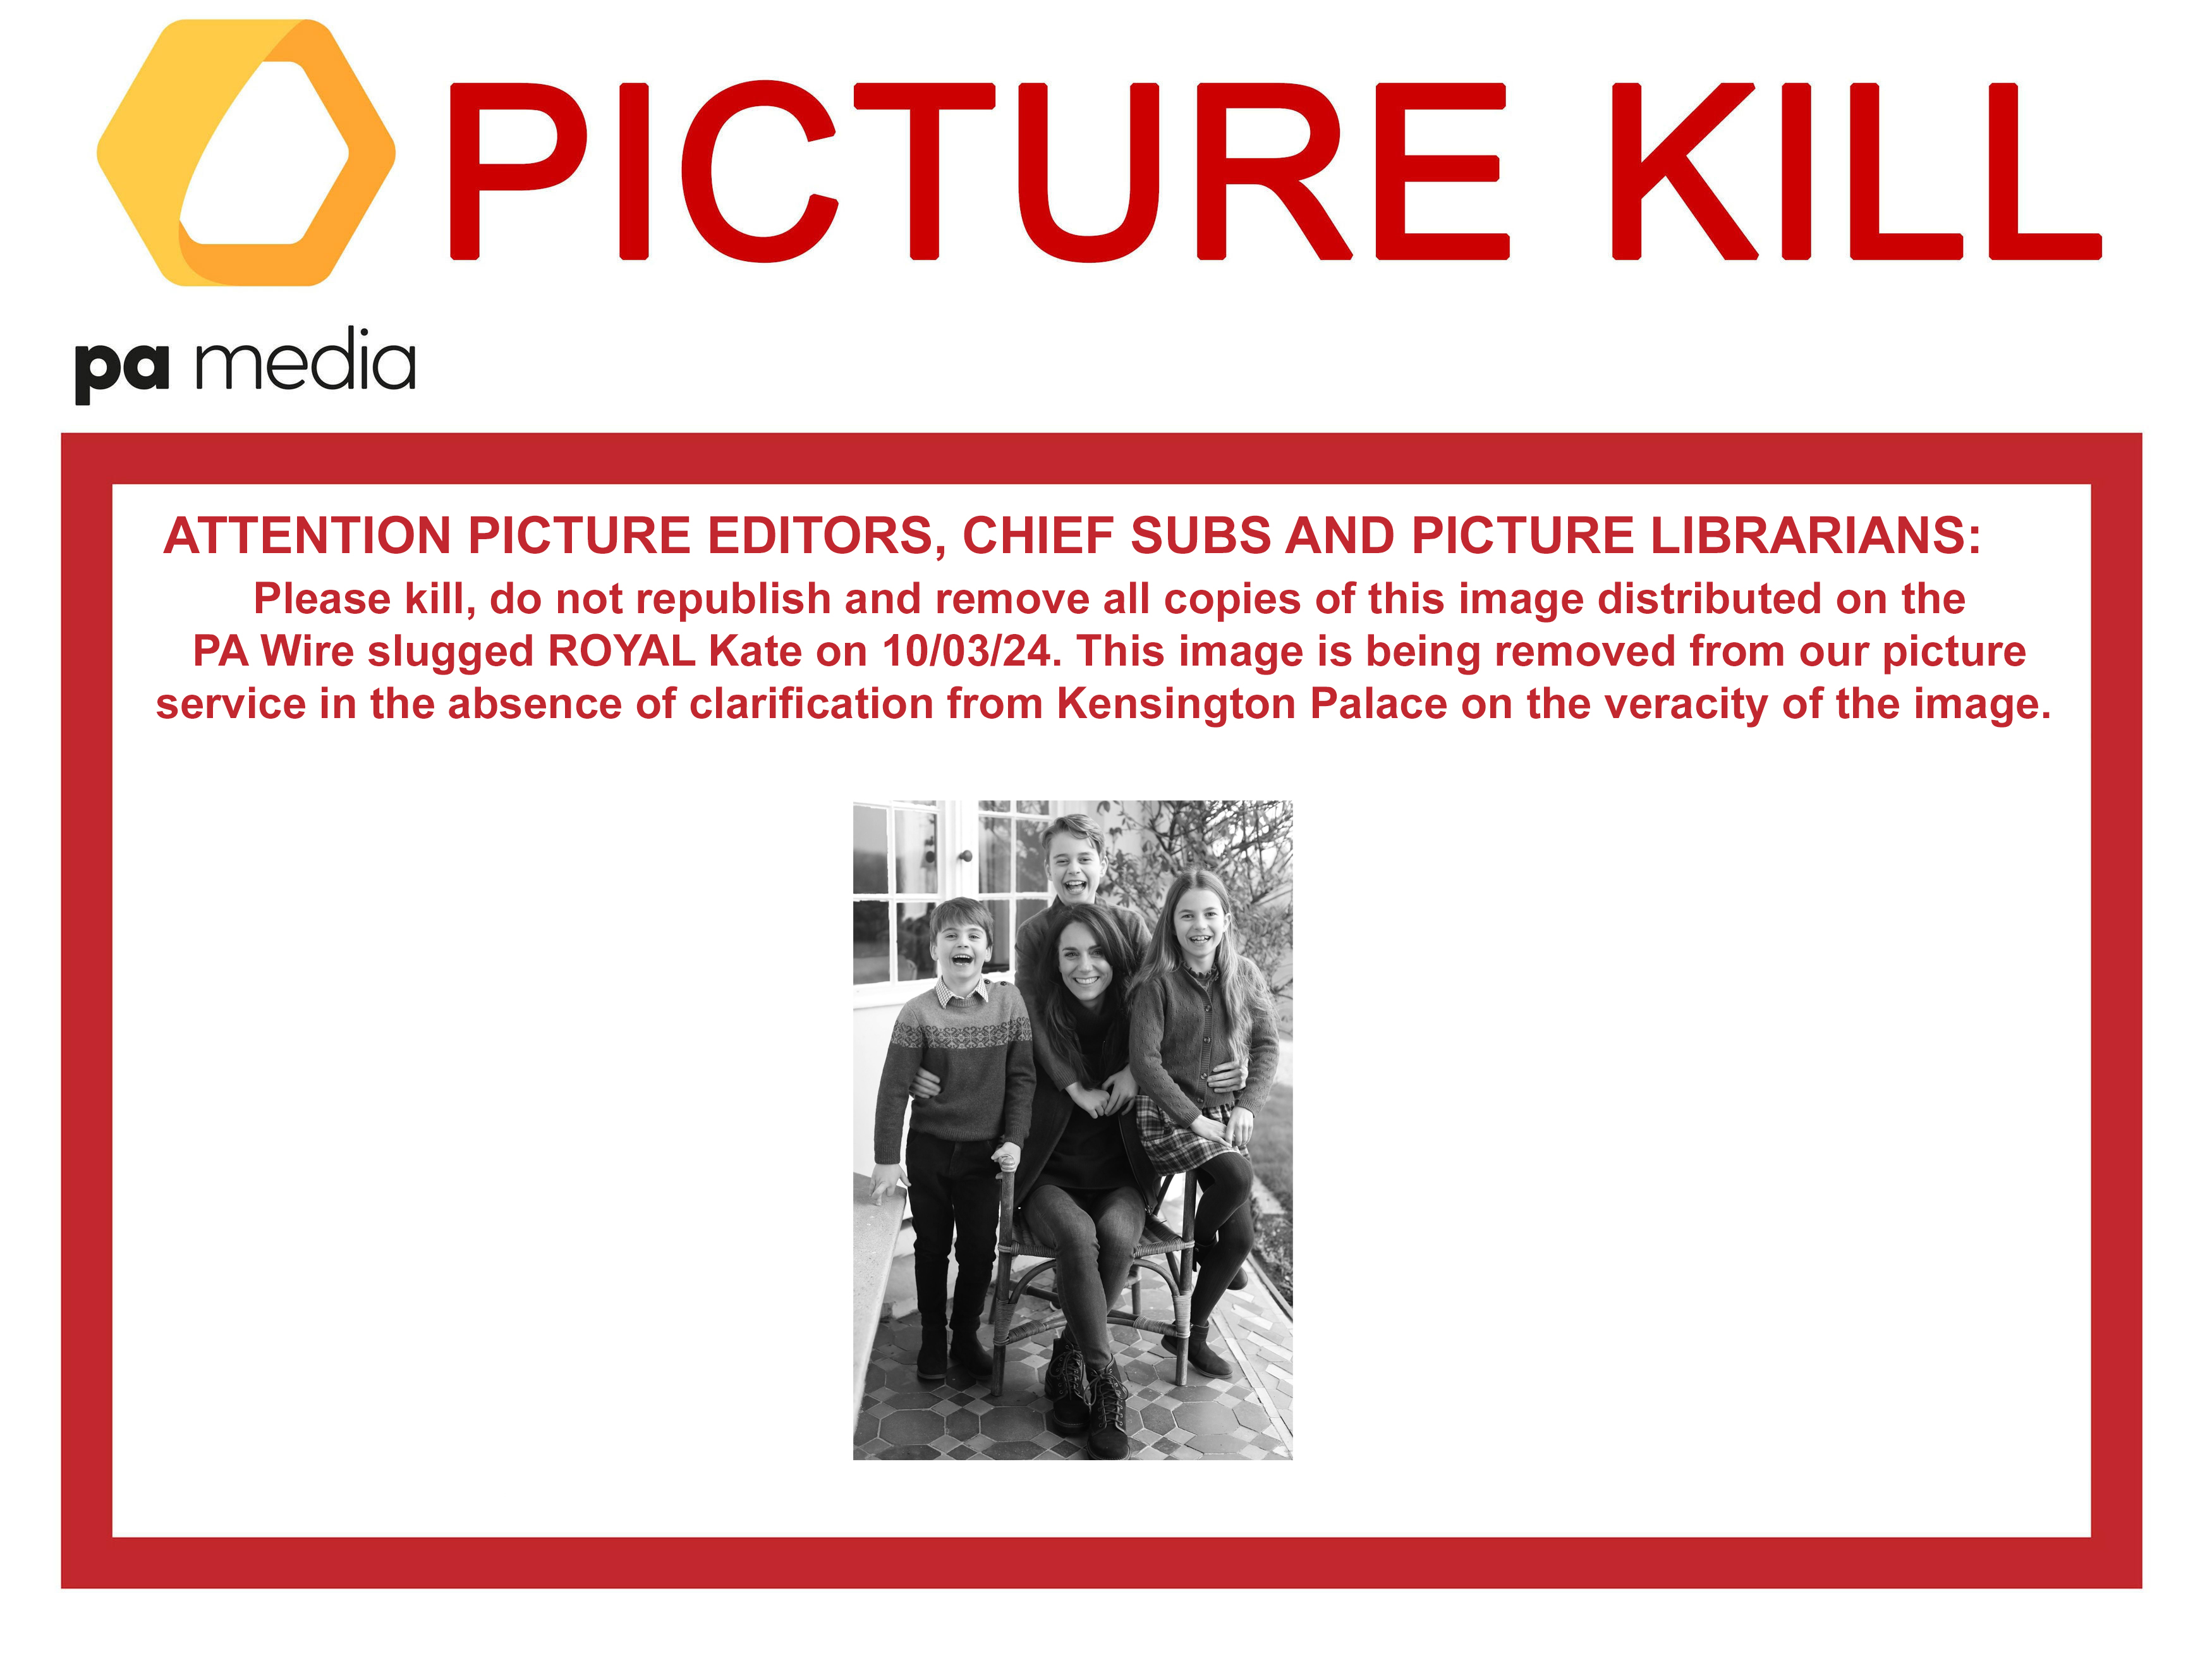 PA Media verschickte eine „Picture Kill“-Mitteilung an die Medienunternehmen, die Verwendung des Bildes einzustellen